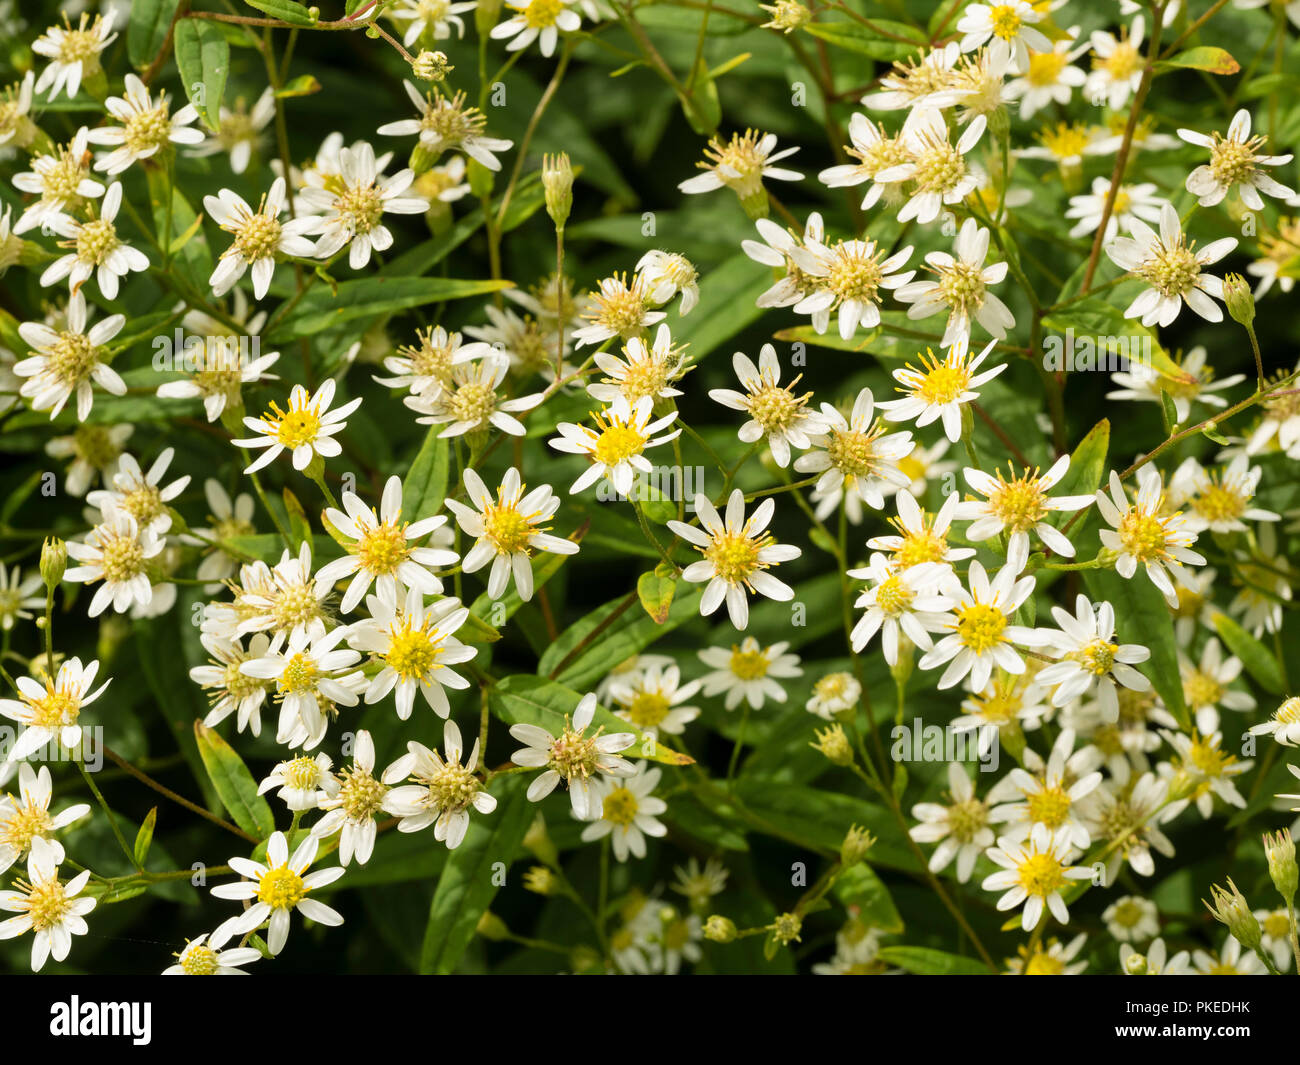 Daisy come fiori bianchi della North American flat top aster, Doellingeria umbellata, che fiorisce in autunno Foto Stock